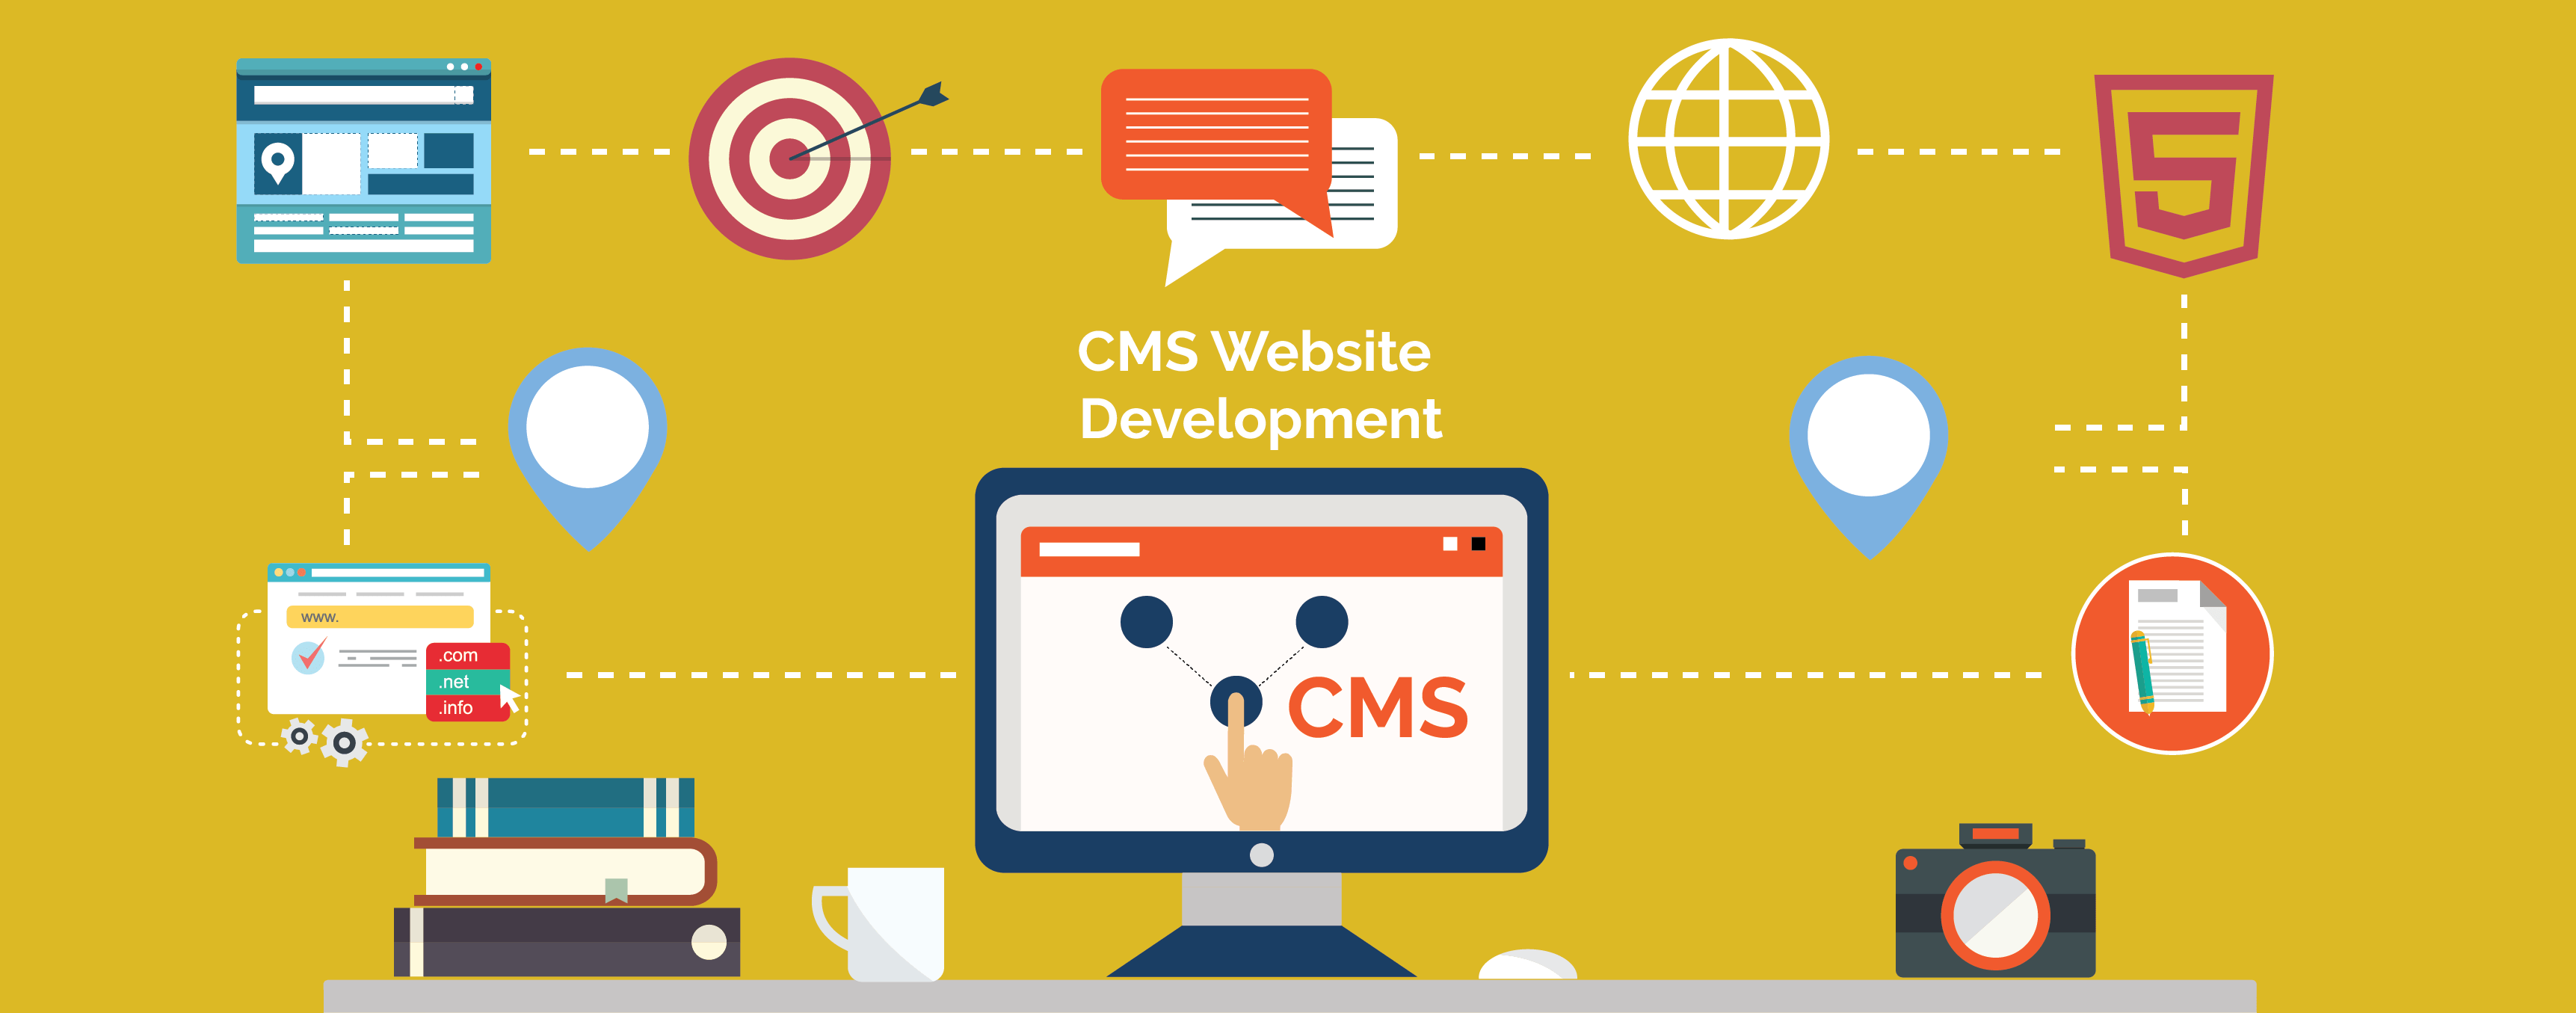 Tìm hiểu cms là gì và cách sử dụng hiệu quả cho website của bạn